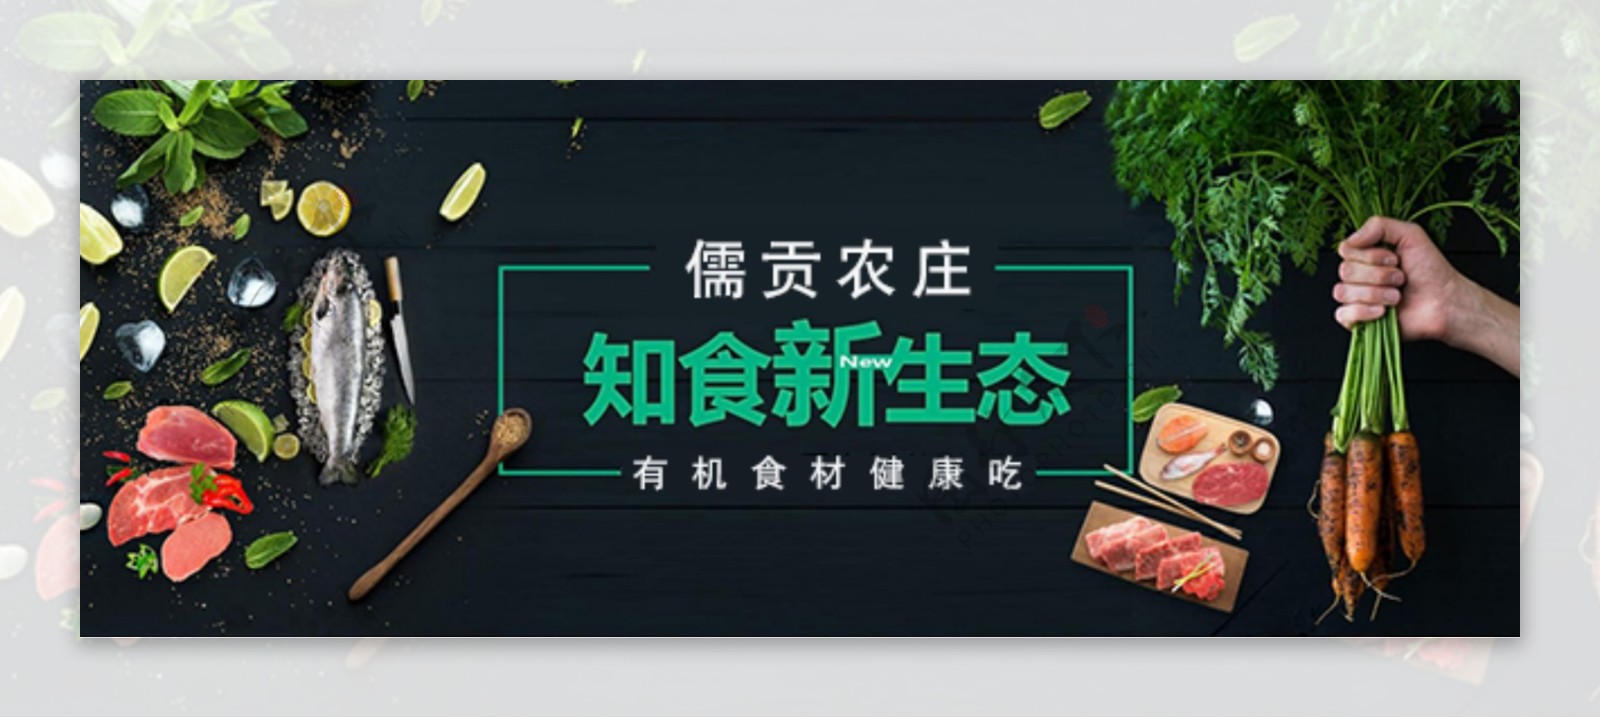 手机微商城有机食材食品banner微店